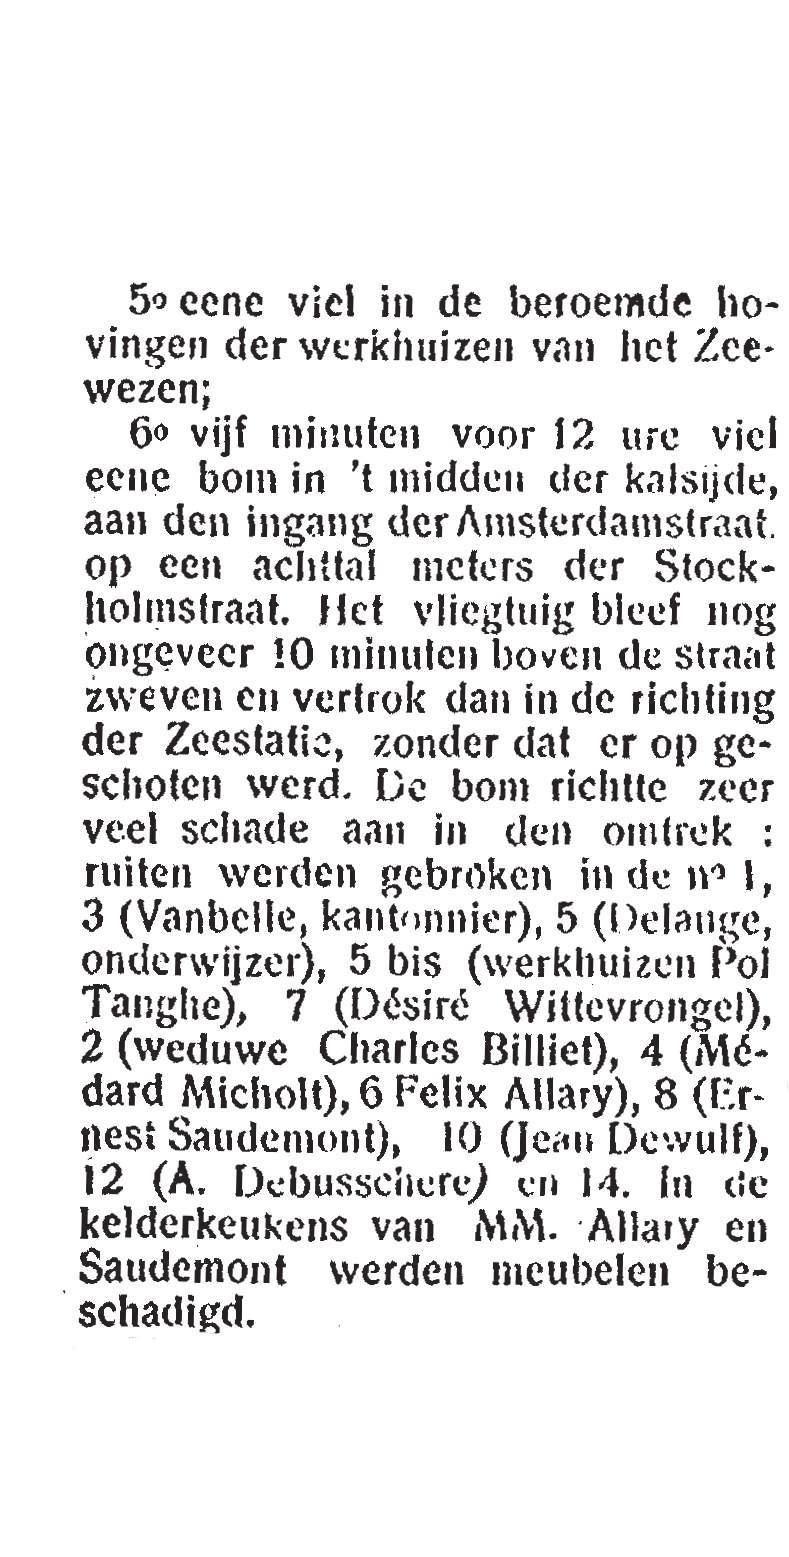 Uitgave L, Oostende, De Vriese, s.d., pp. 4-5.